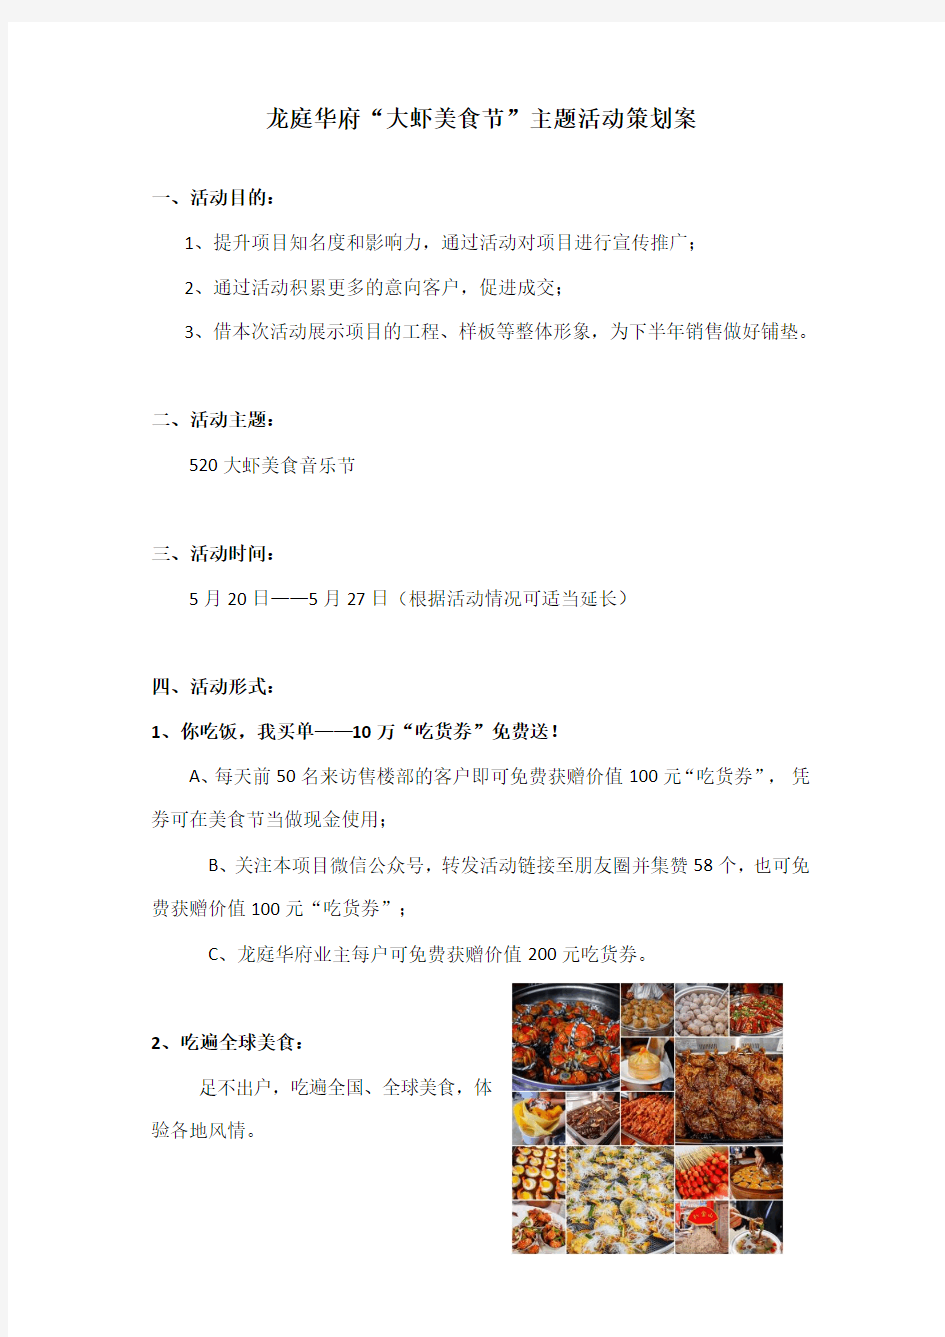 大虾美食节活动策划案